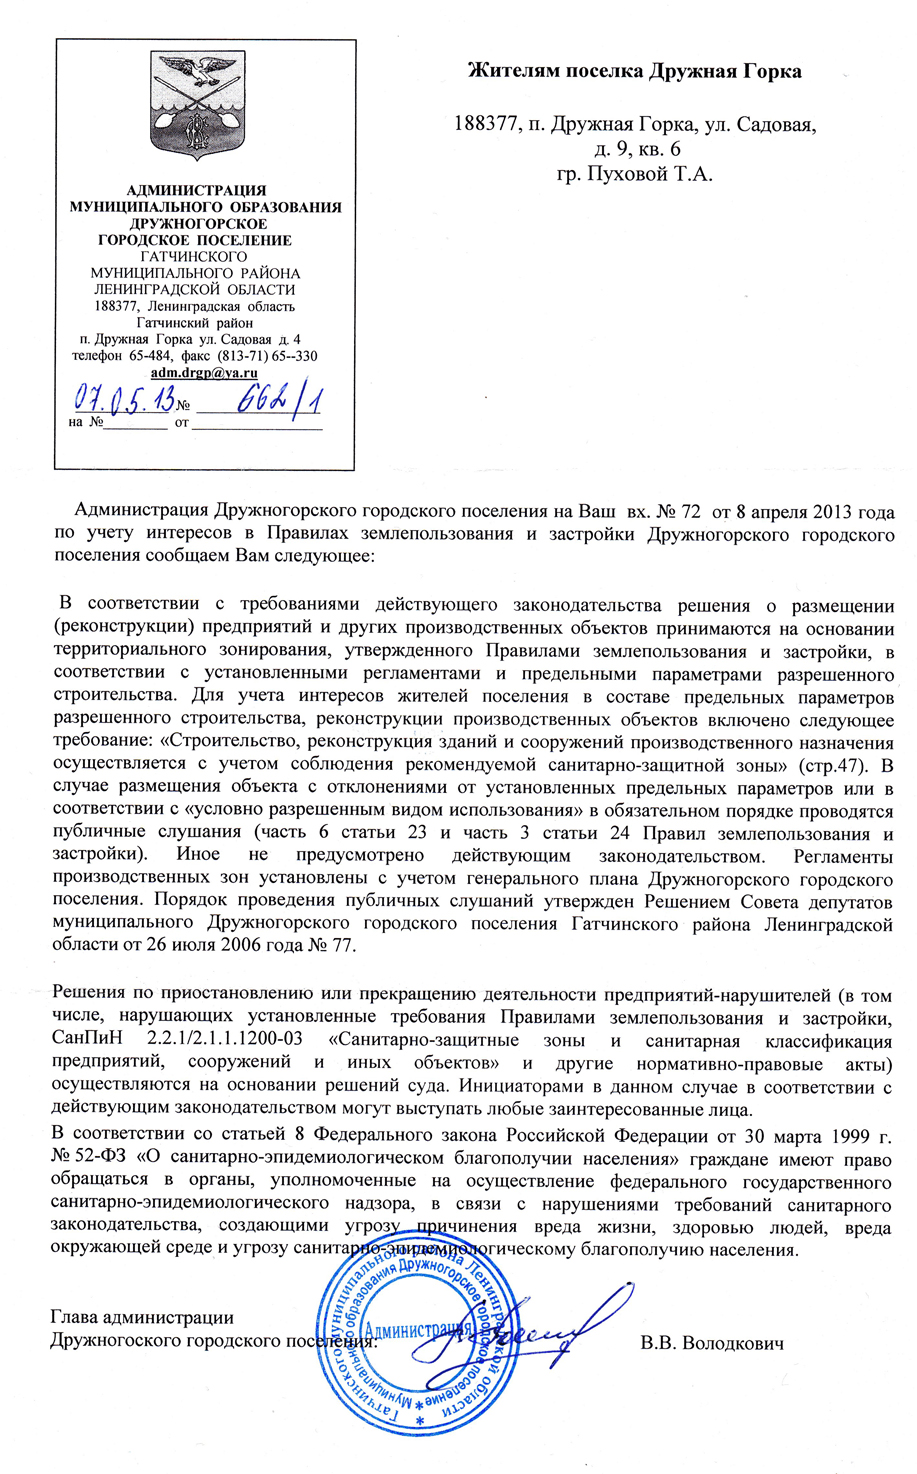 Ответ из администрации Дружной Горки Пуховой Т.А от 07.05.2013